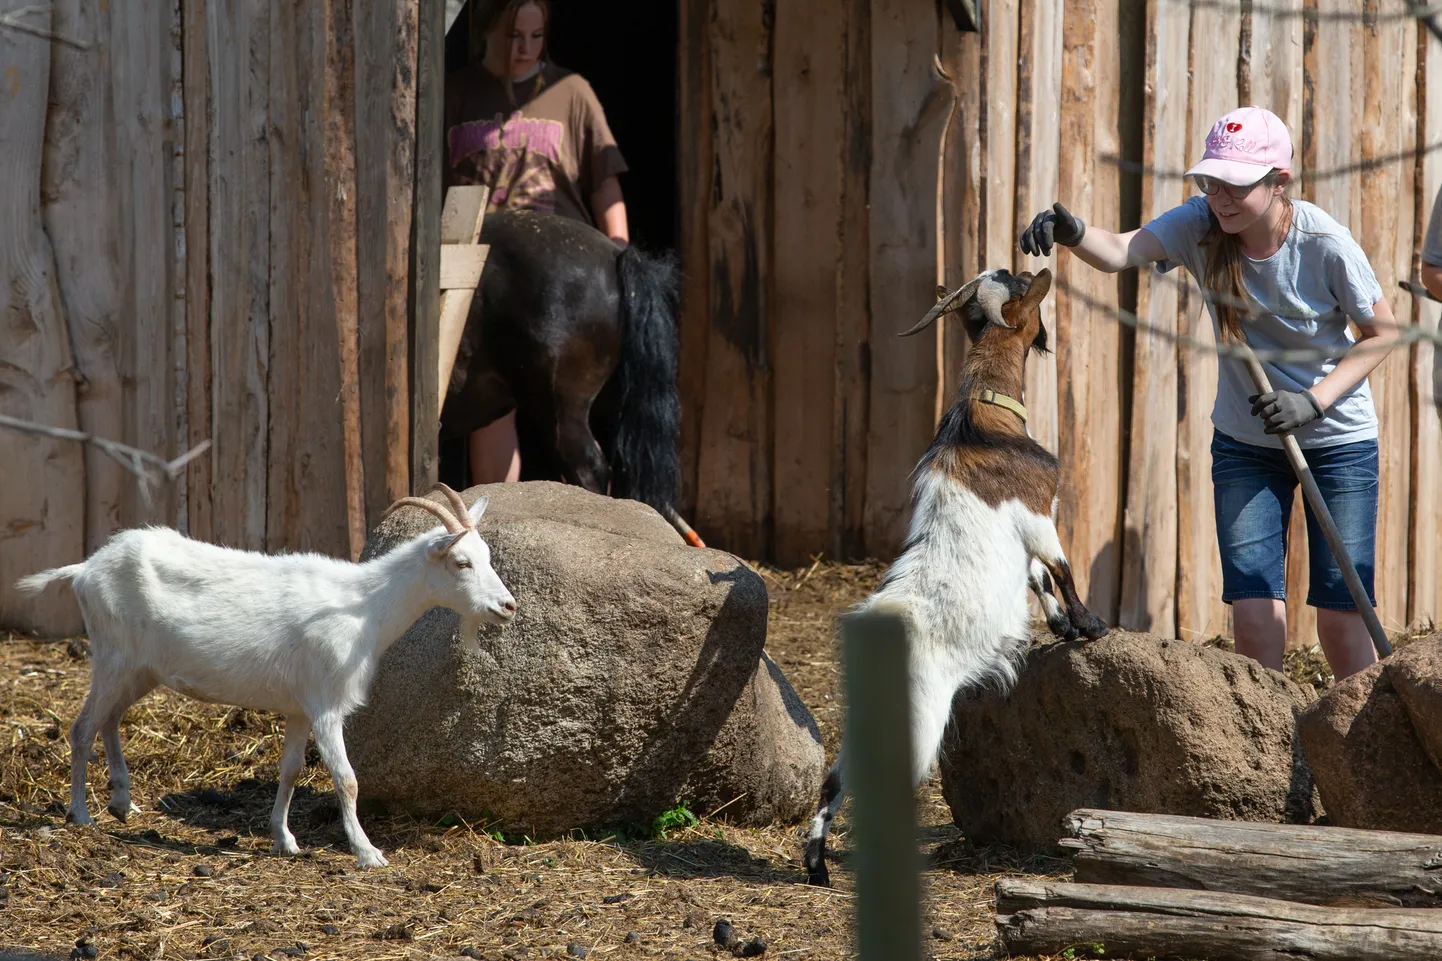 Элена Лаанемяэ также воспользовалась возможностью пообщаться с животными в зоопарке Пяйте.